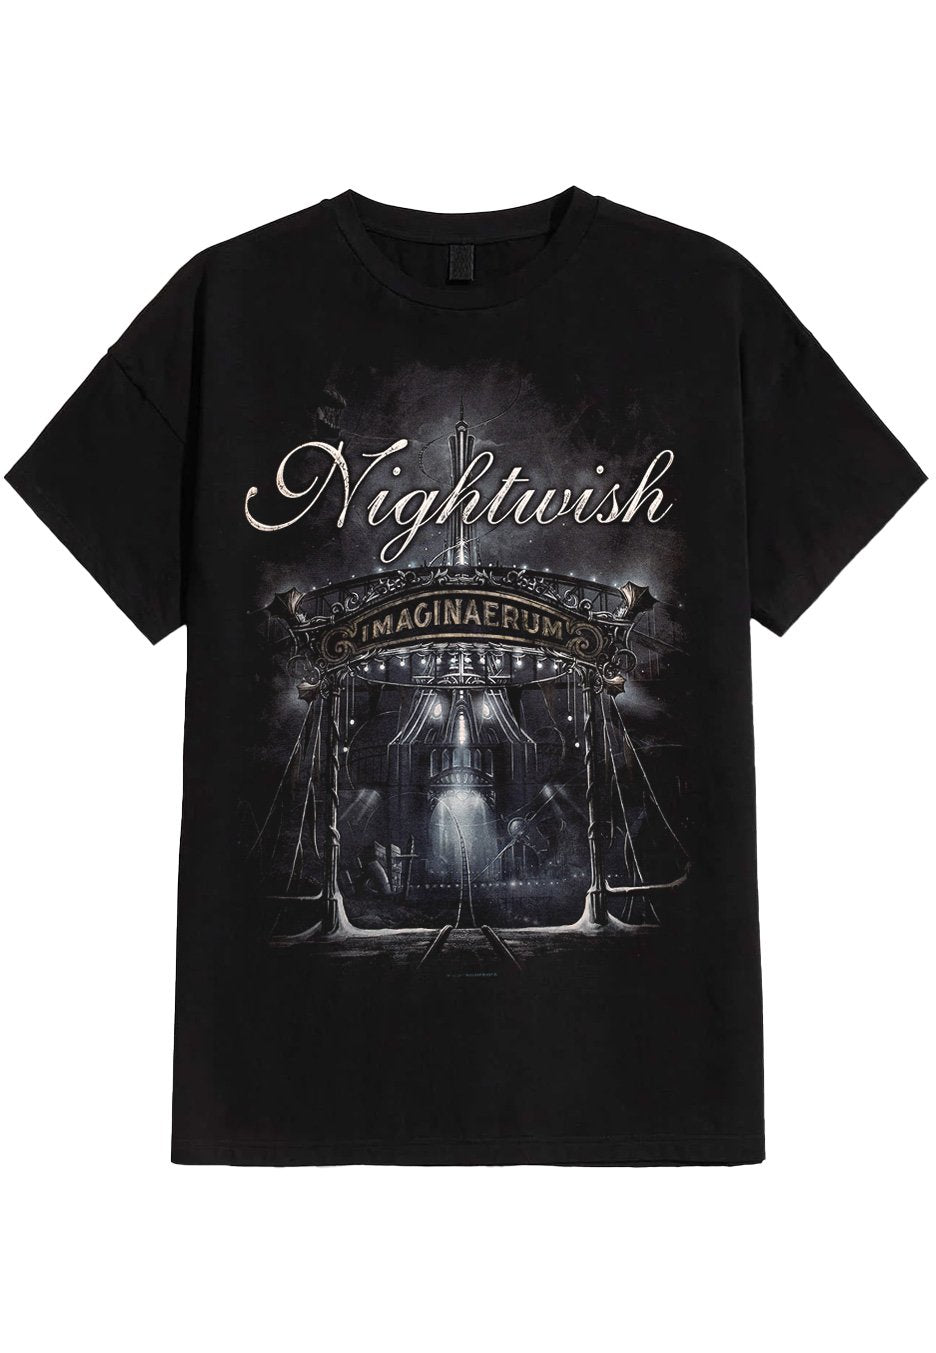 Nightwish - Imaginaerum - T-Shirt